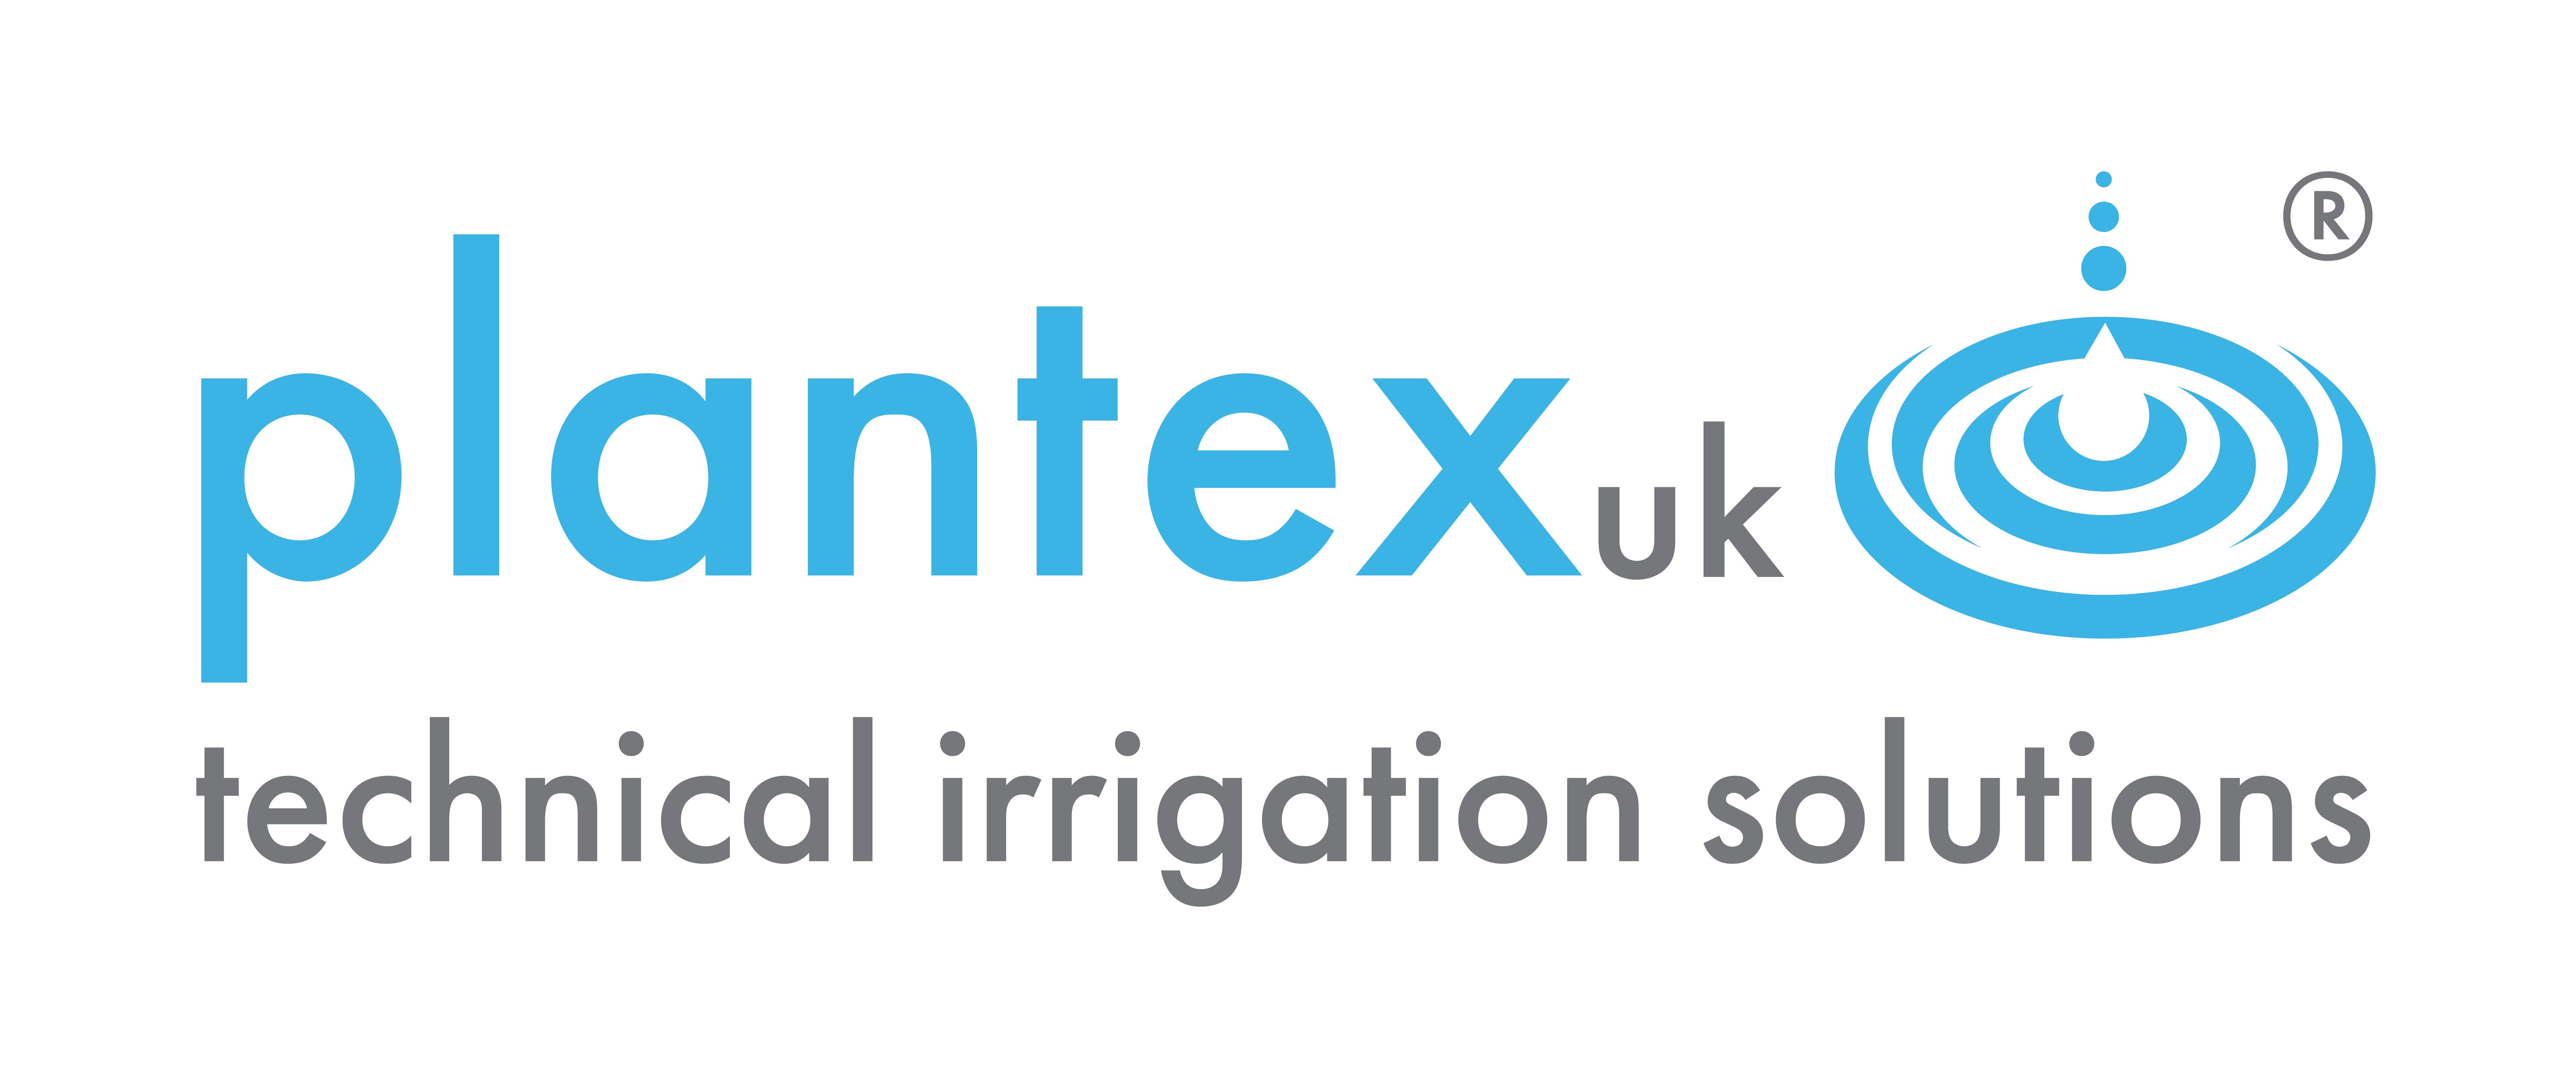 PLANTEX UK